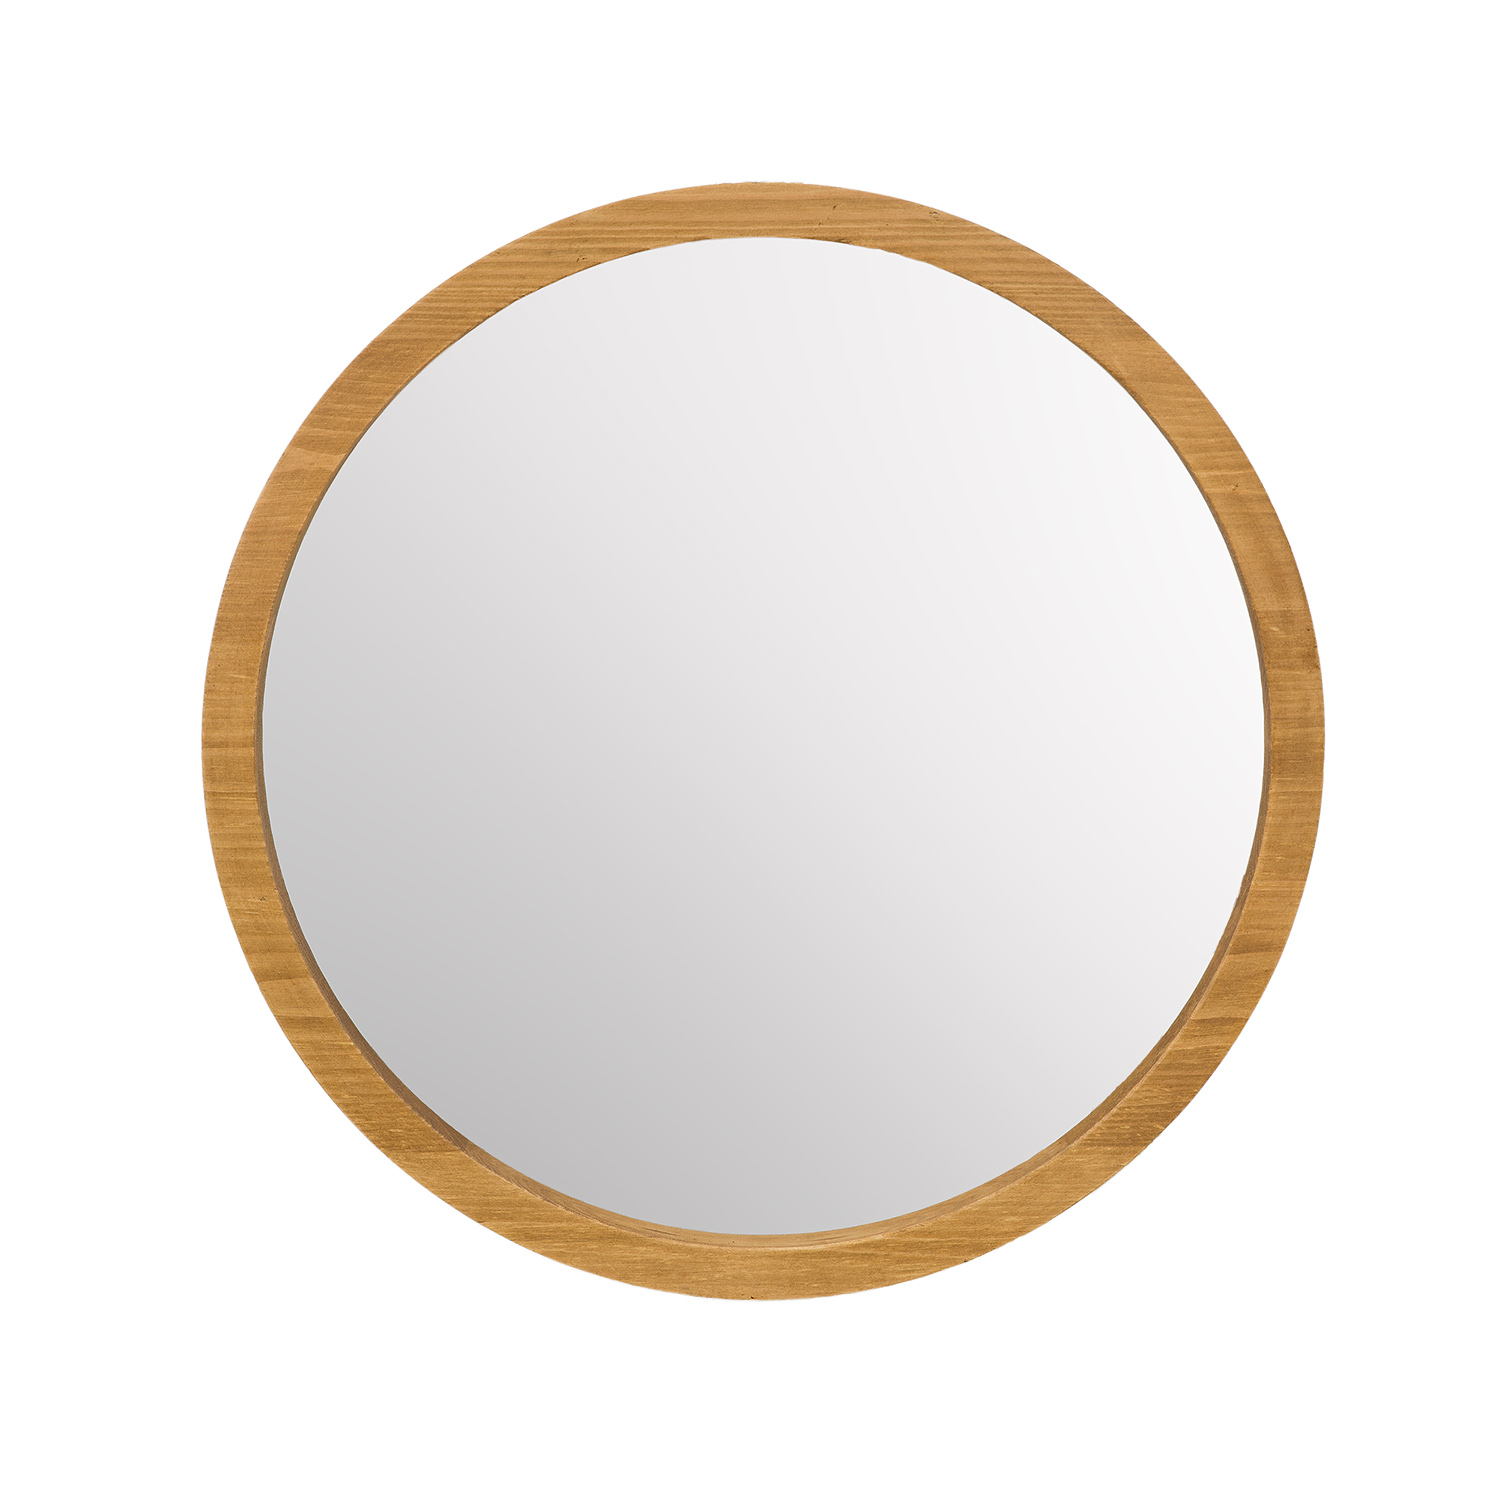 Zrkadlo z borovice LA703 - bezfarebný vosk, S62, H4